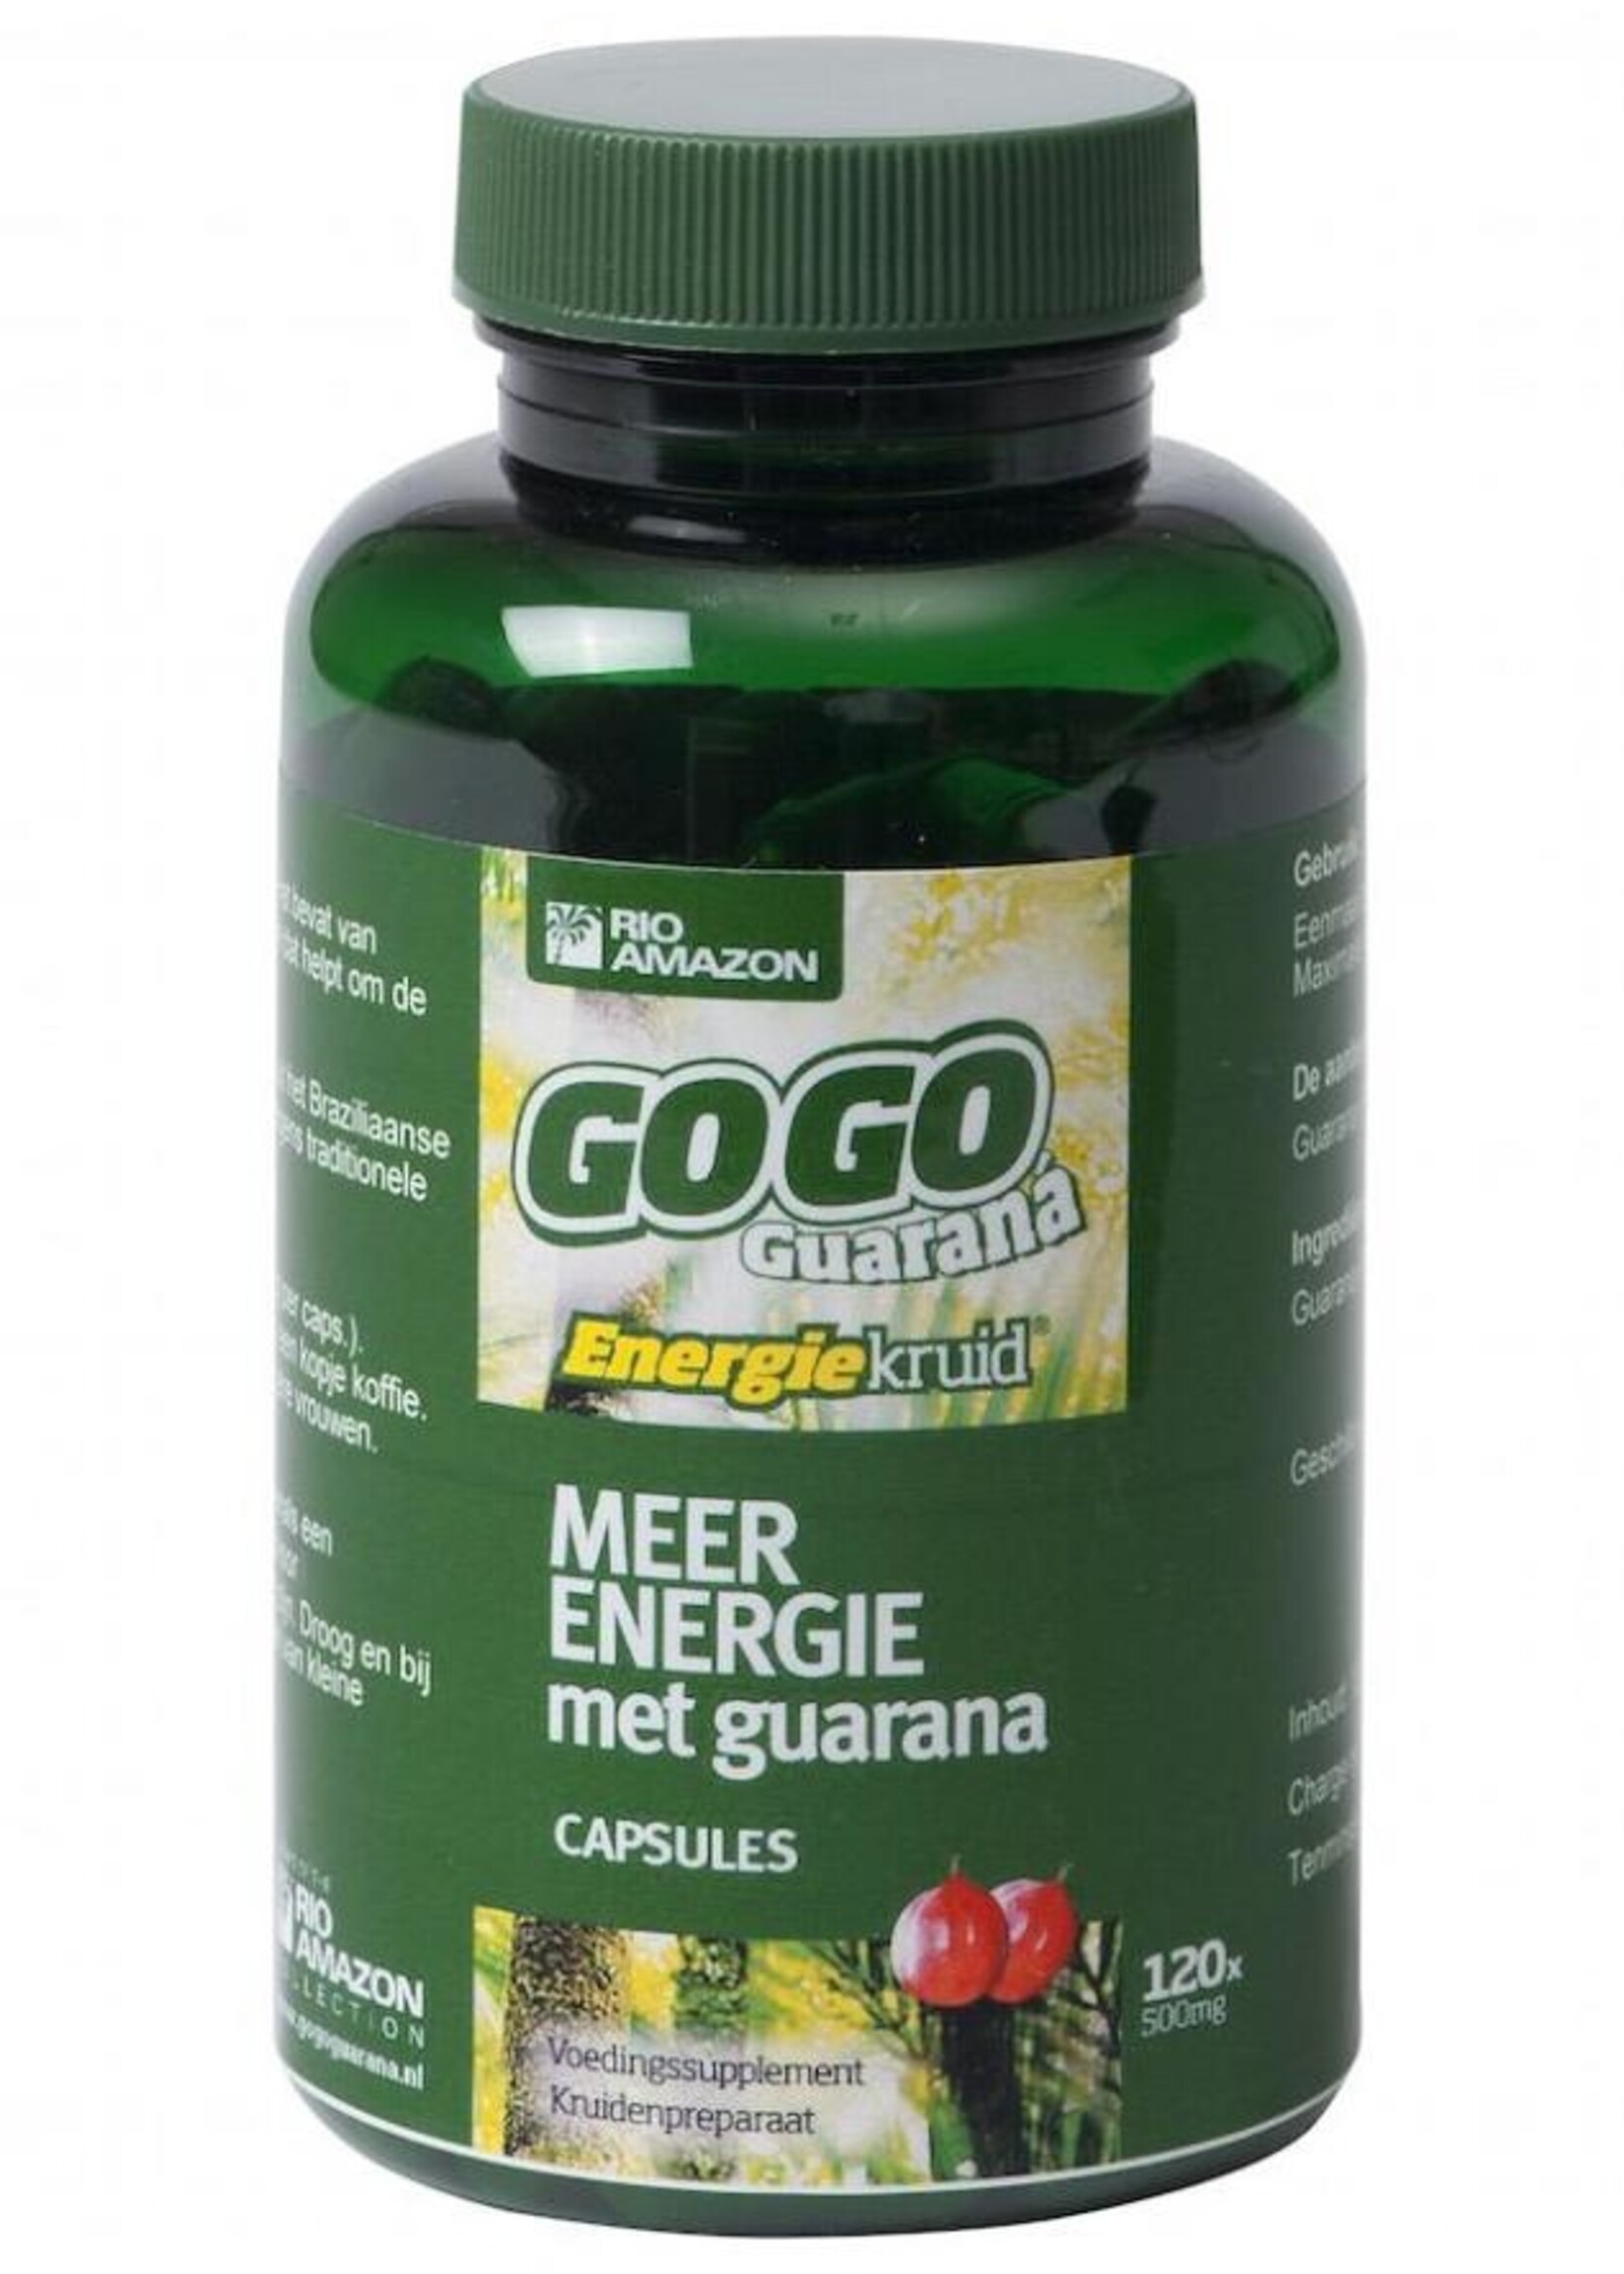 Gogo guarana 500MG 120vc